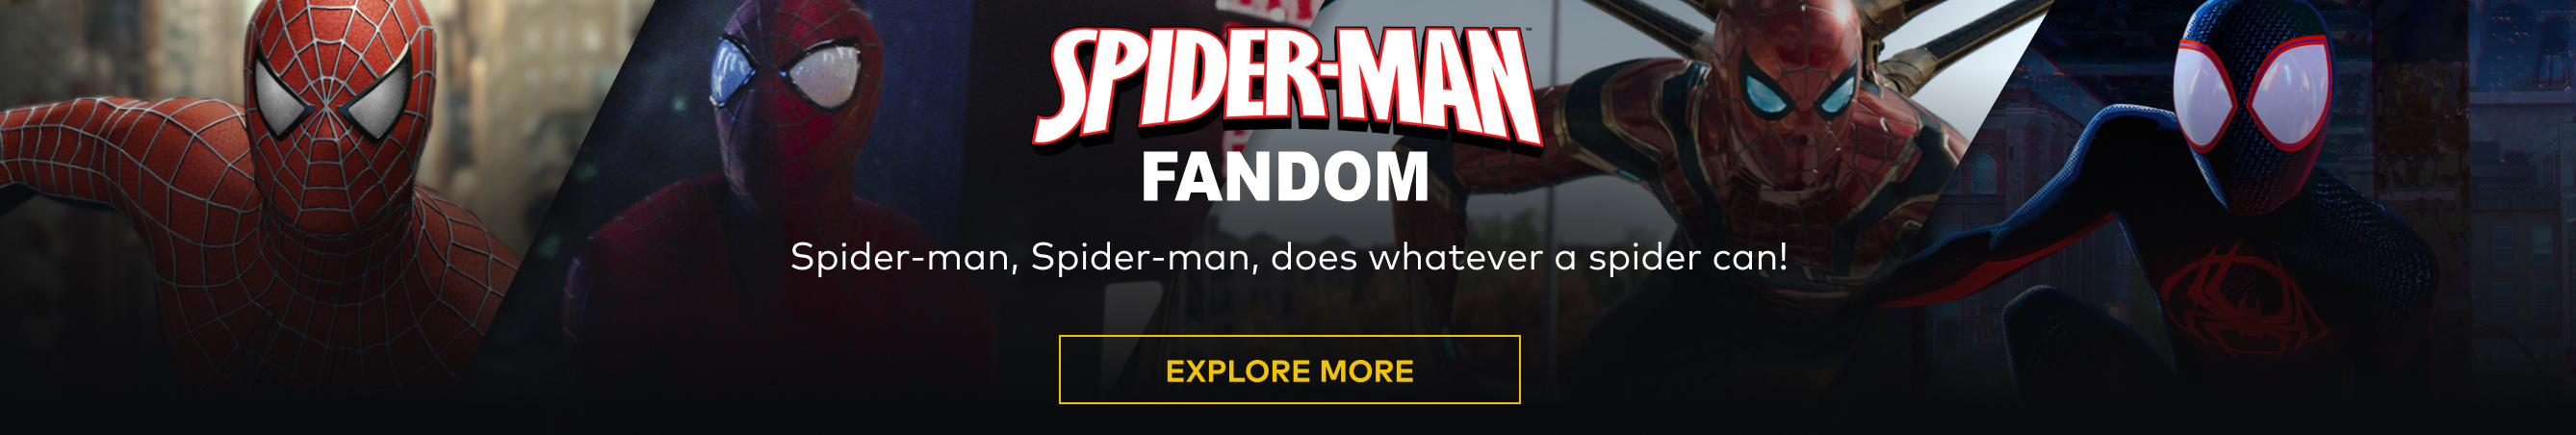 Spider-Man Fandom